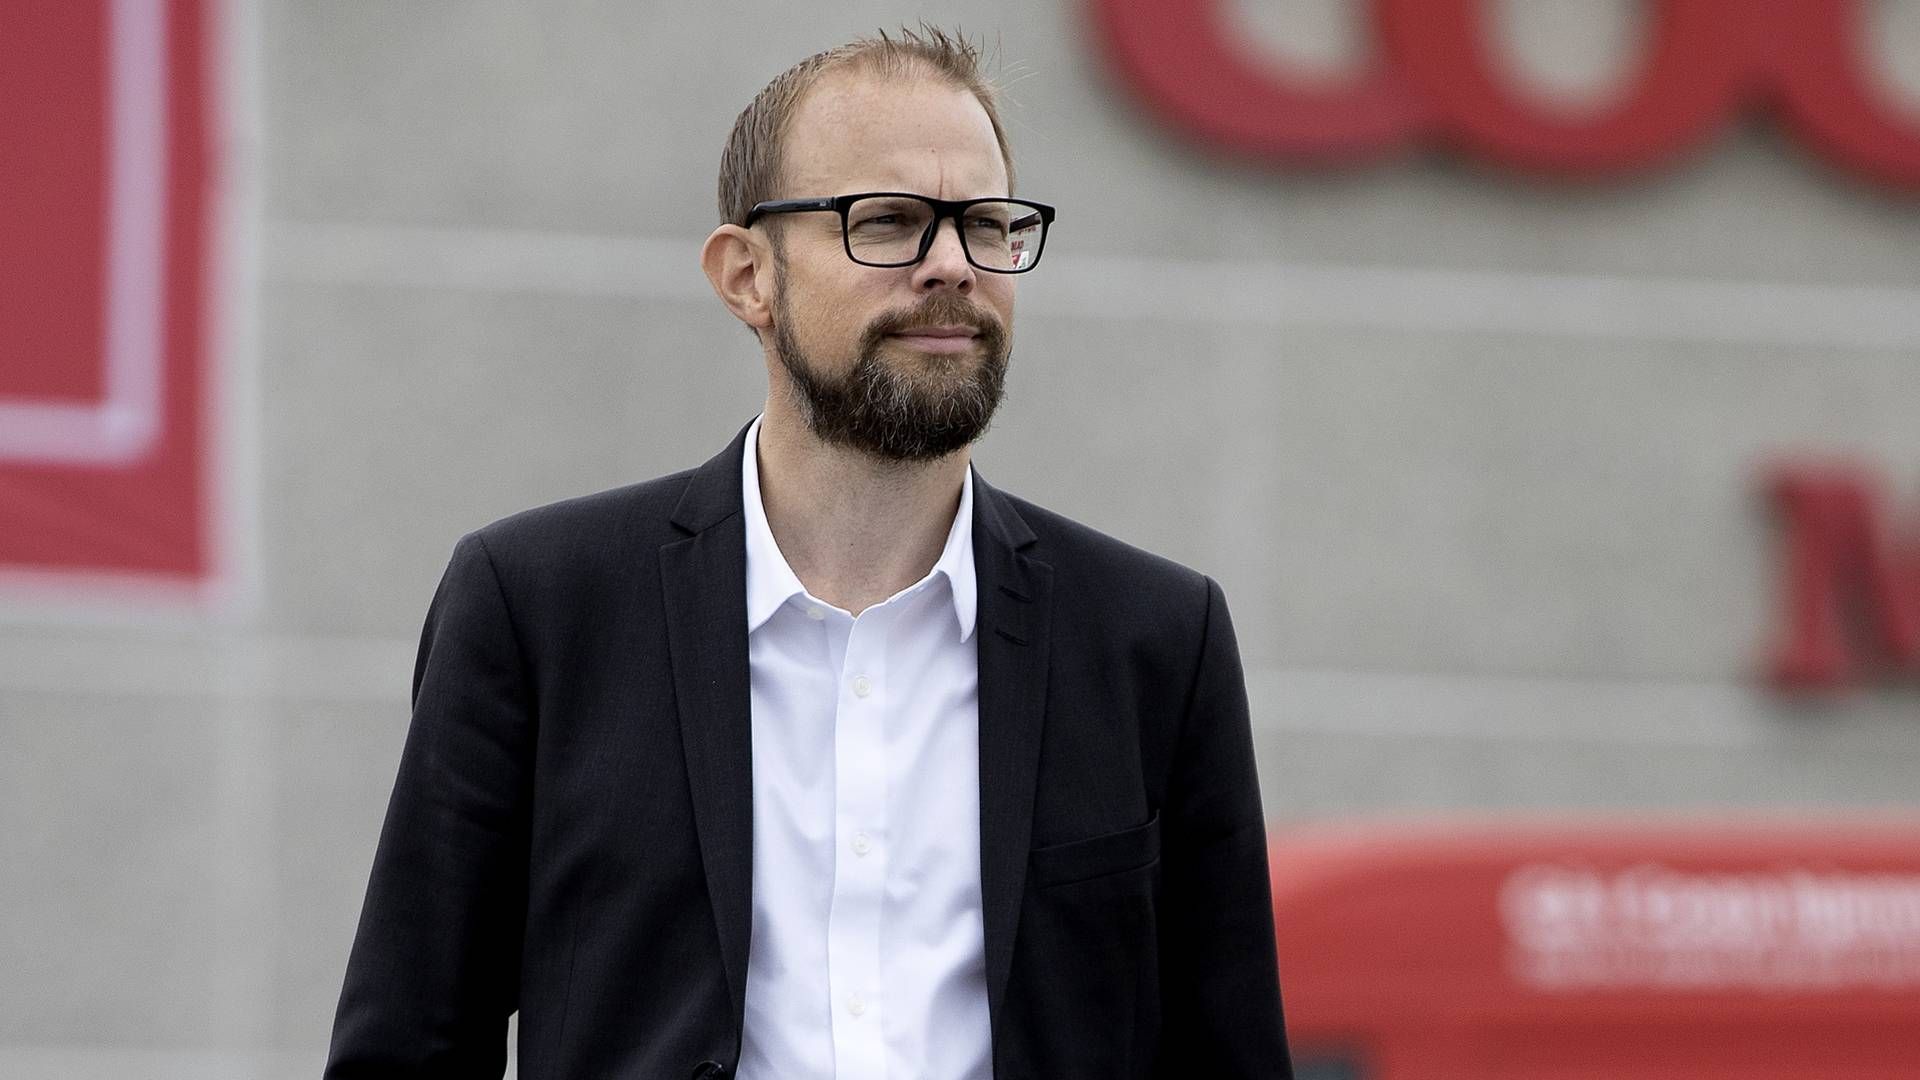 Kræn Østergaard afløste i september 2020 Peter Høgsted som adm. direktør for Coop Danmark. | Foto: Finn Frandsen